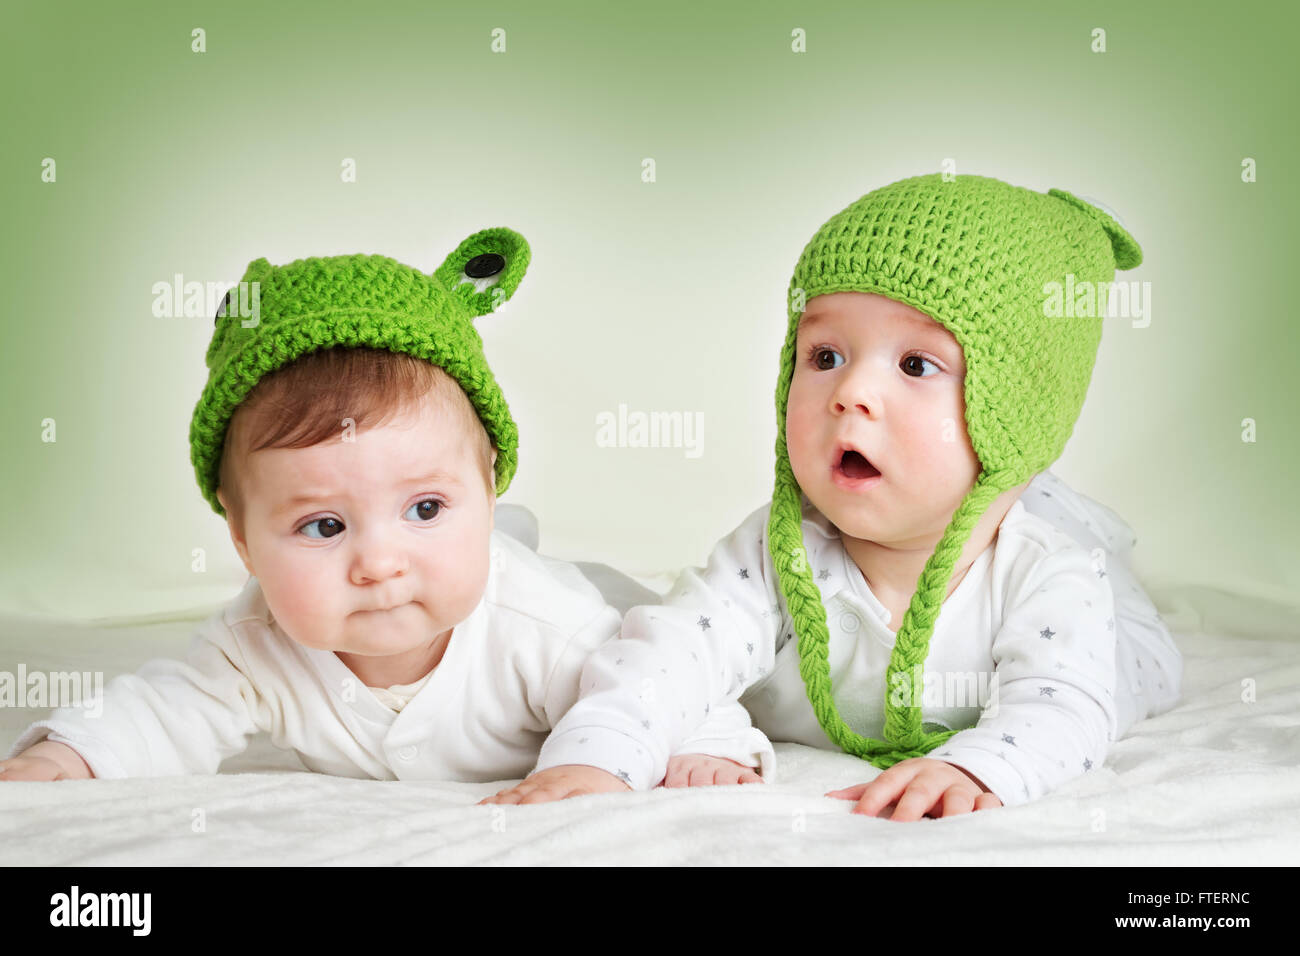 cute infant hats